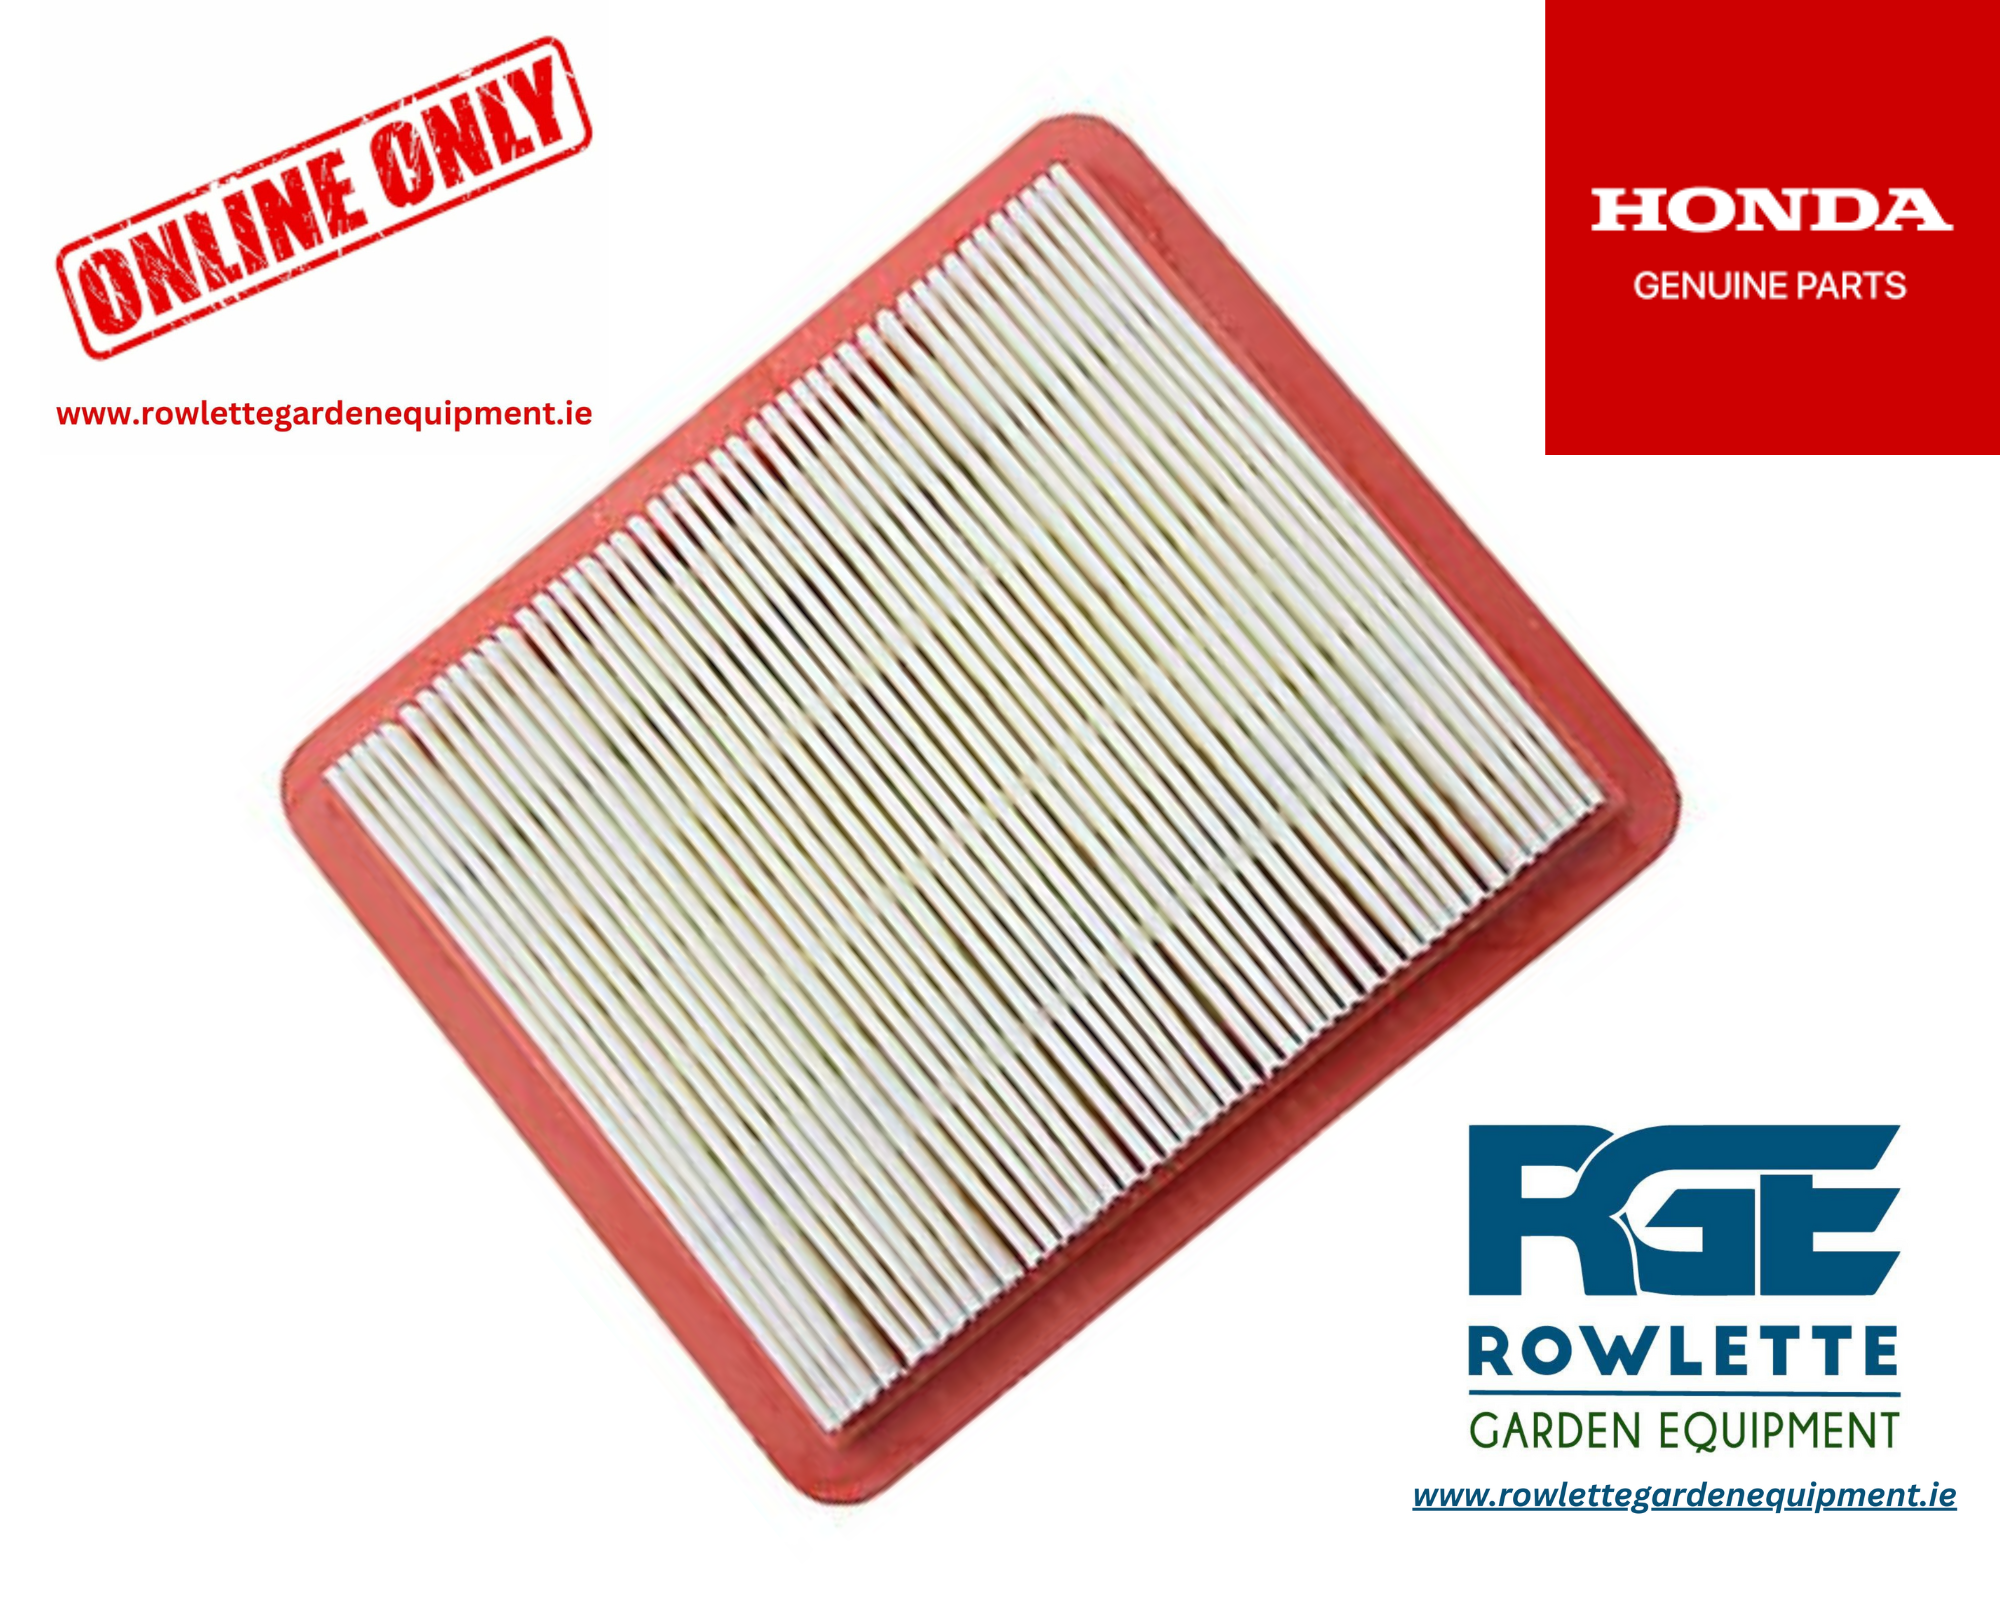 Genuine Honda GCV200 new model Air filter